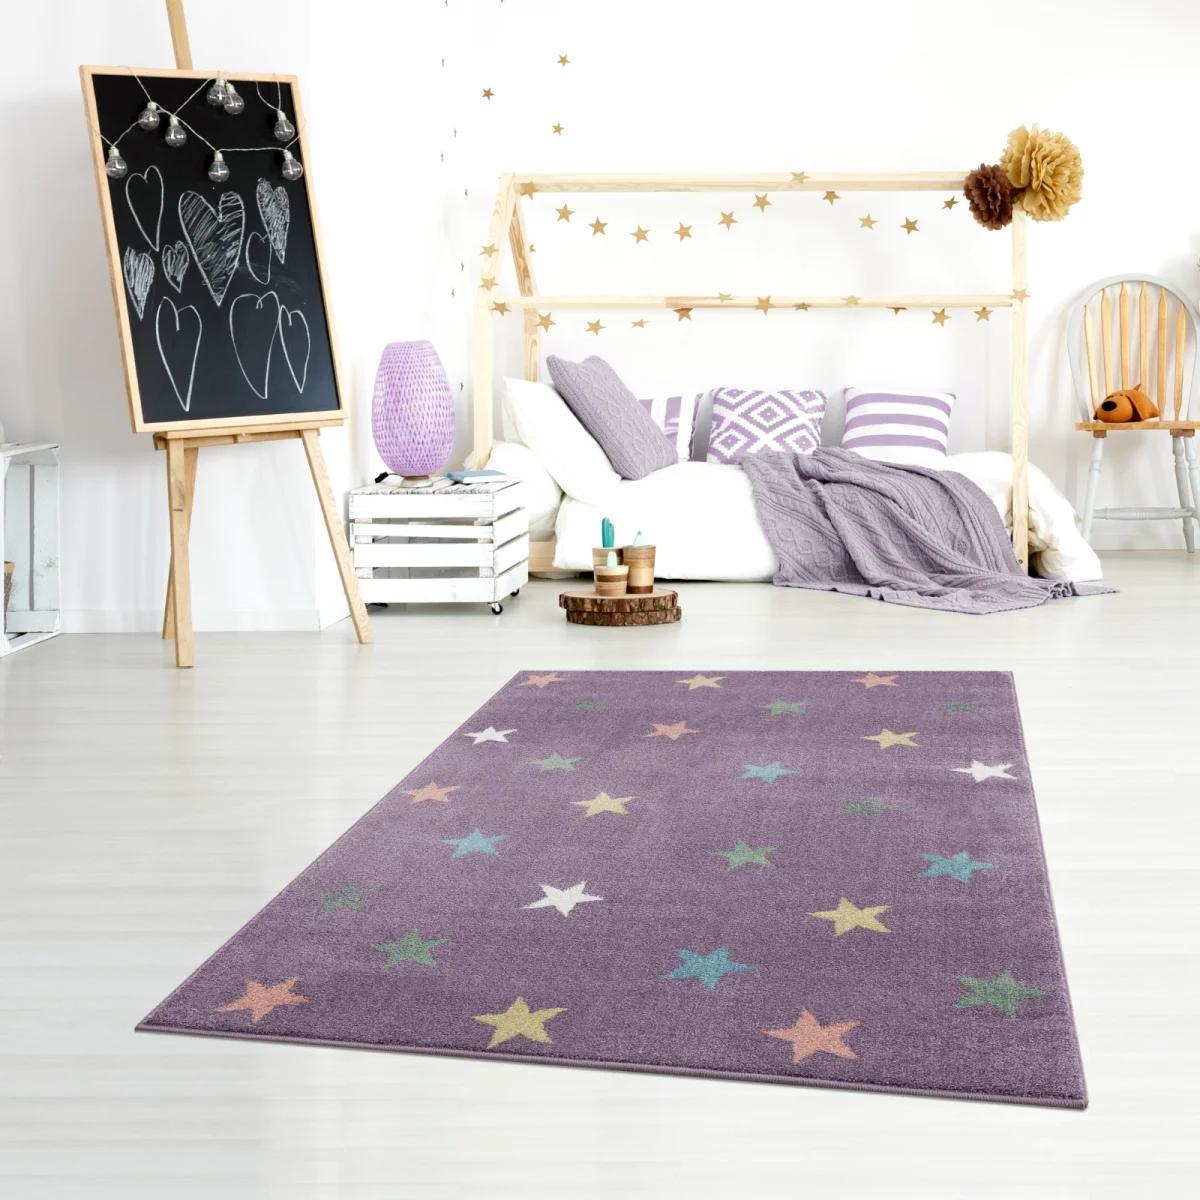 Dywan dziecięcy Violet Stars 100x160 cm do pokoju dziecięcego fioletowy w gwiazdki nr. 1